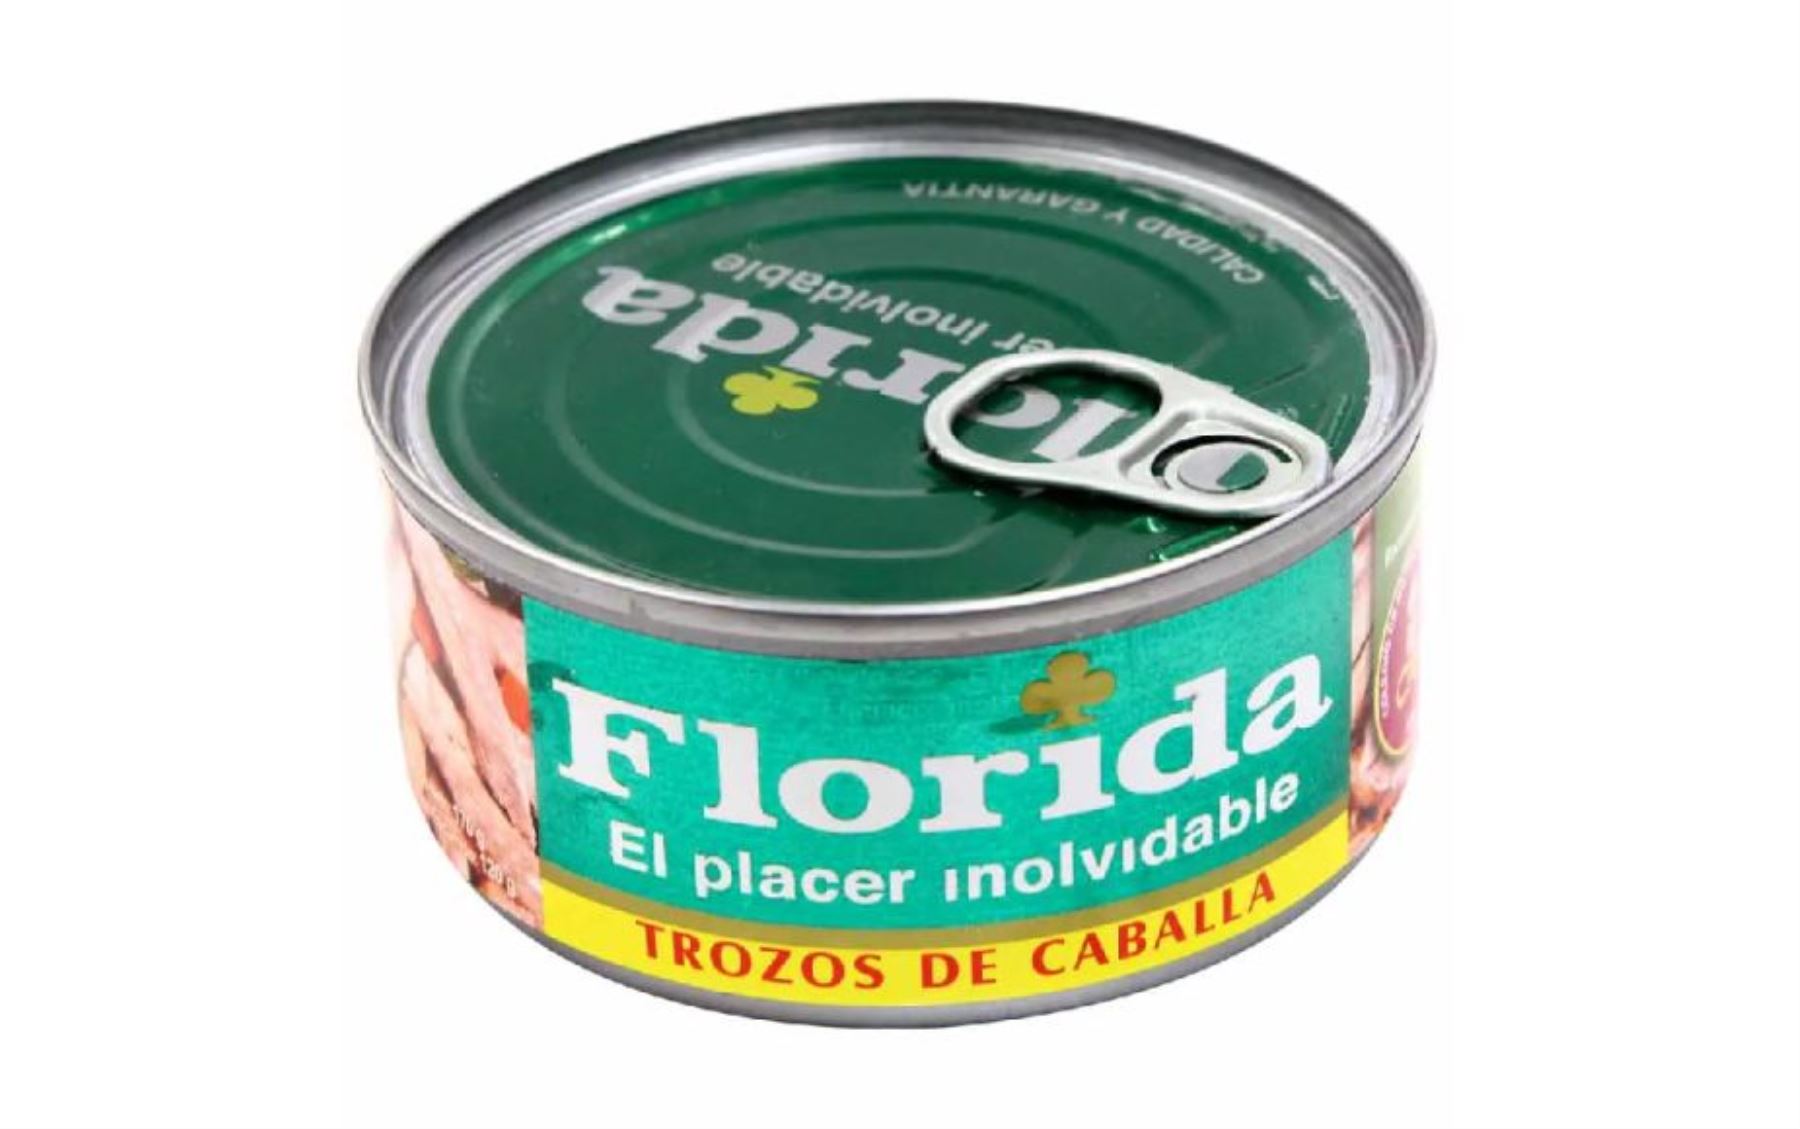 Florida señala que casi la totalidad del producto está resguardado en su almacén. Foto: Internet.